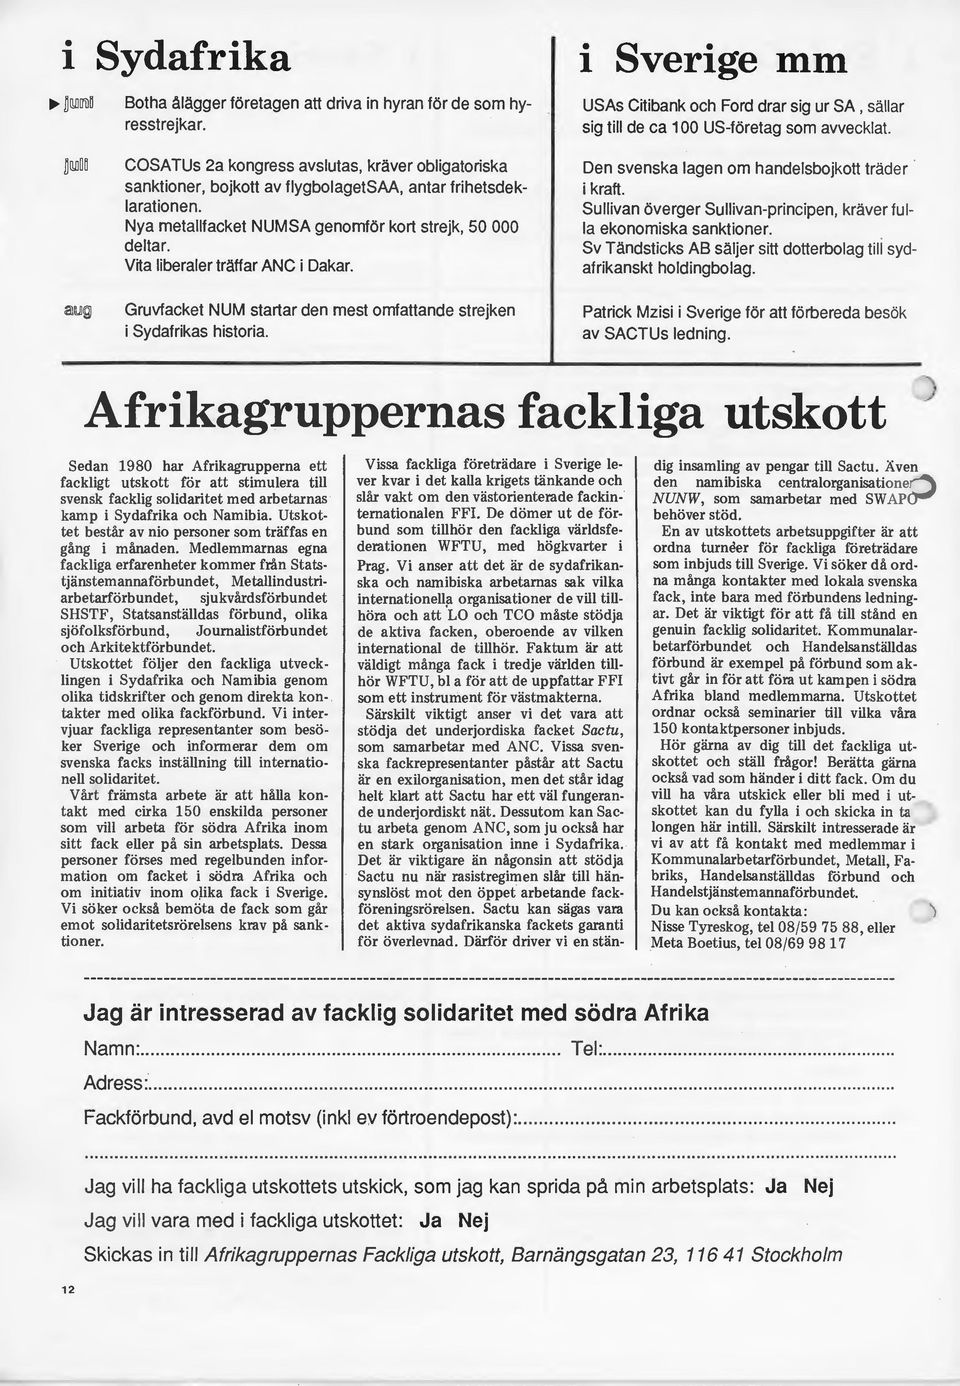 i Sverige mm USAs Citibank och Ford drar sig ur SA, sällar sig till de ca 100 US-företag som avvecklat. Den svenska lagen om handelsbojkott träder i kraft.